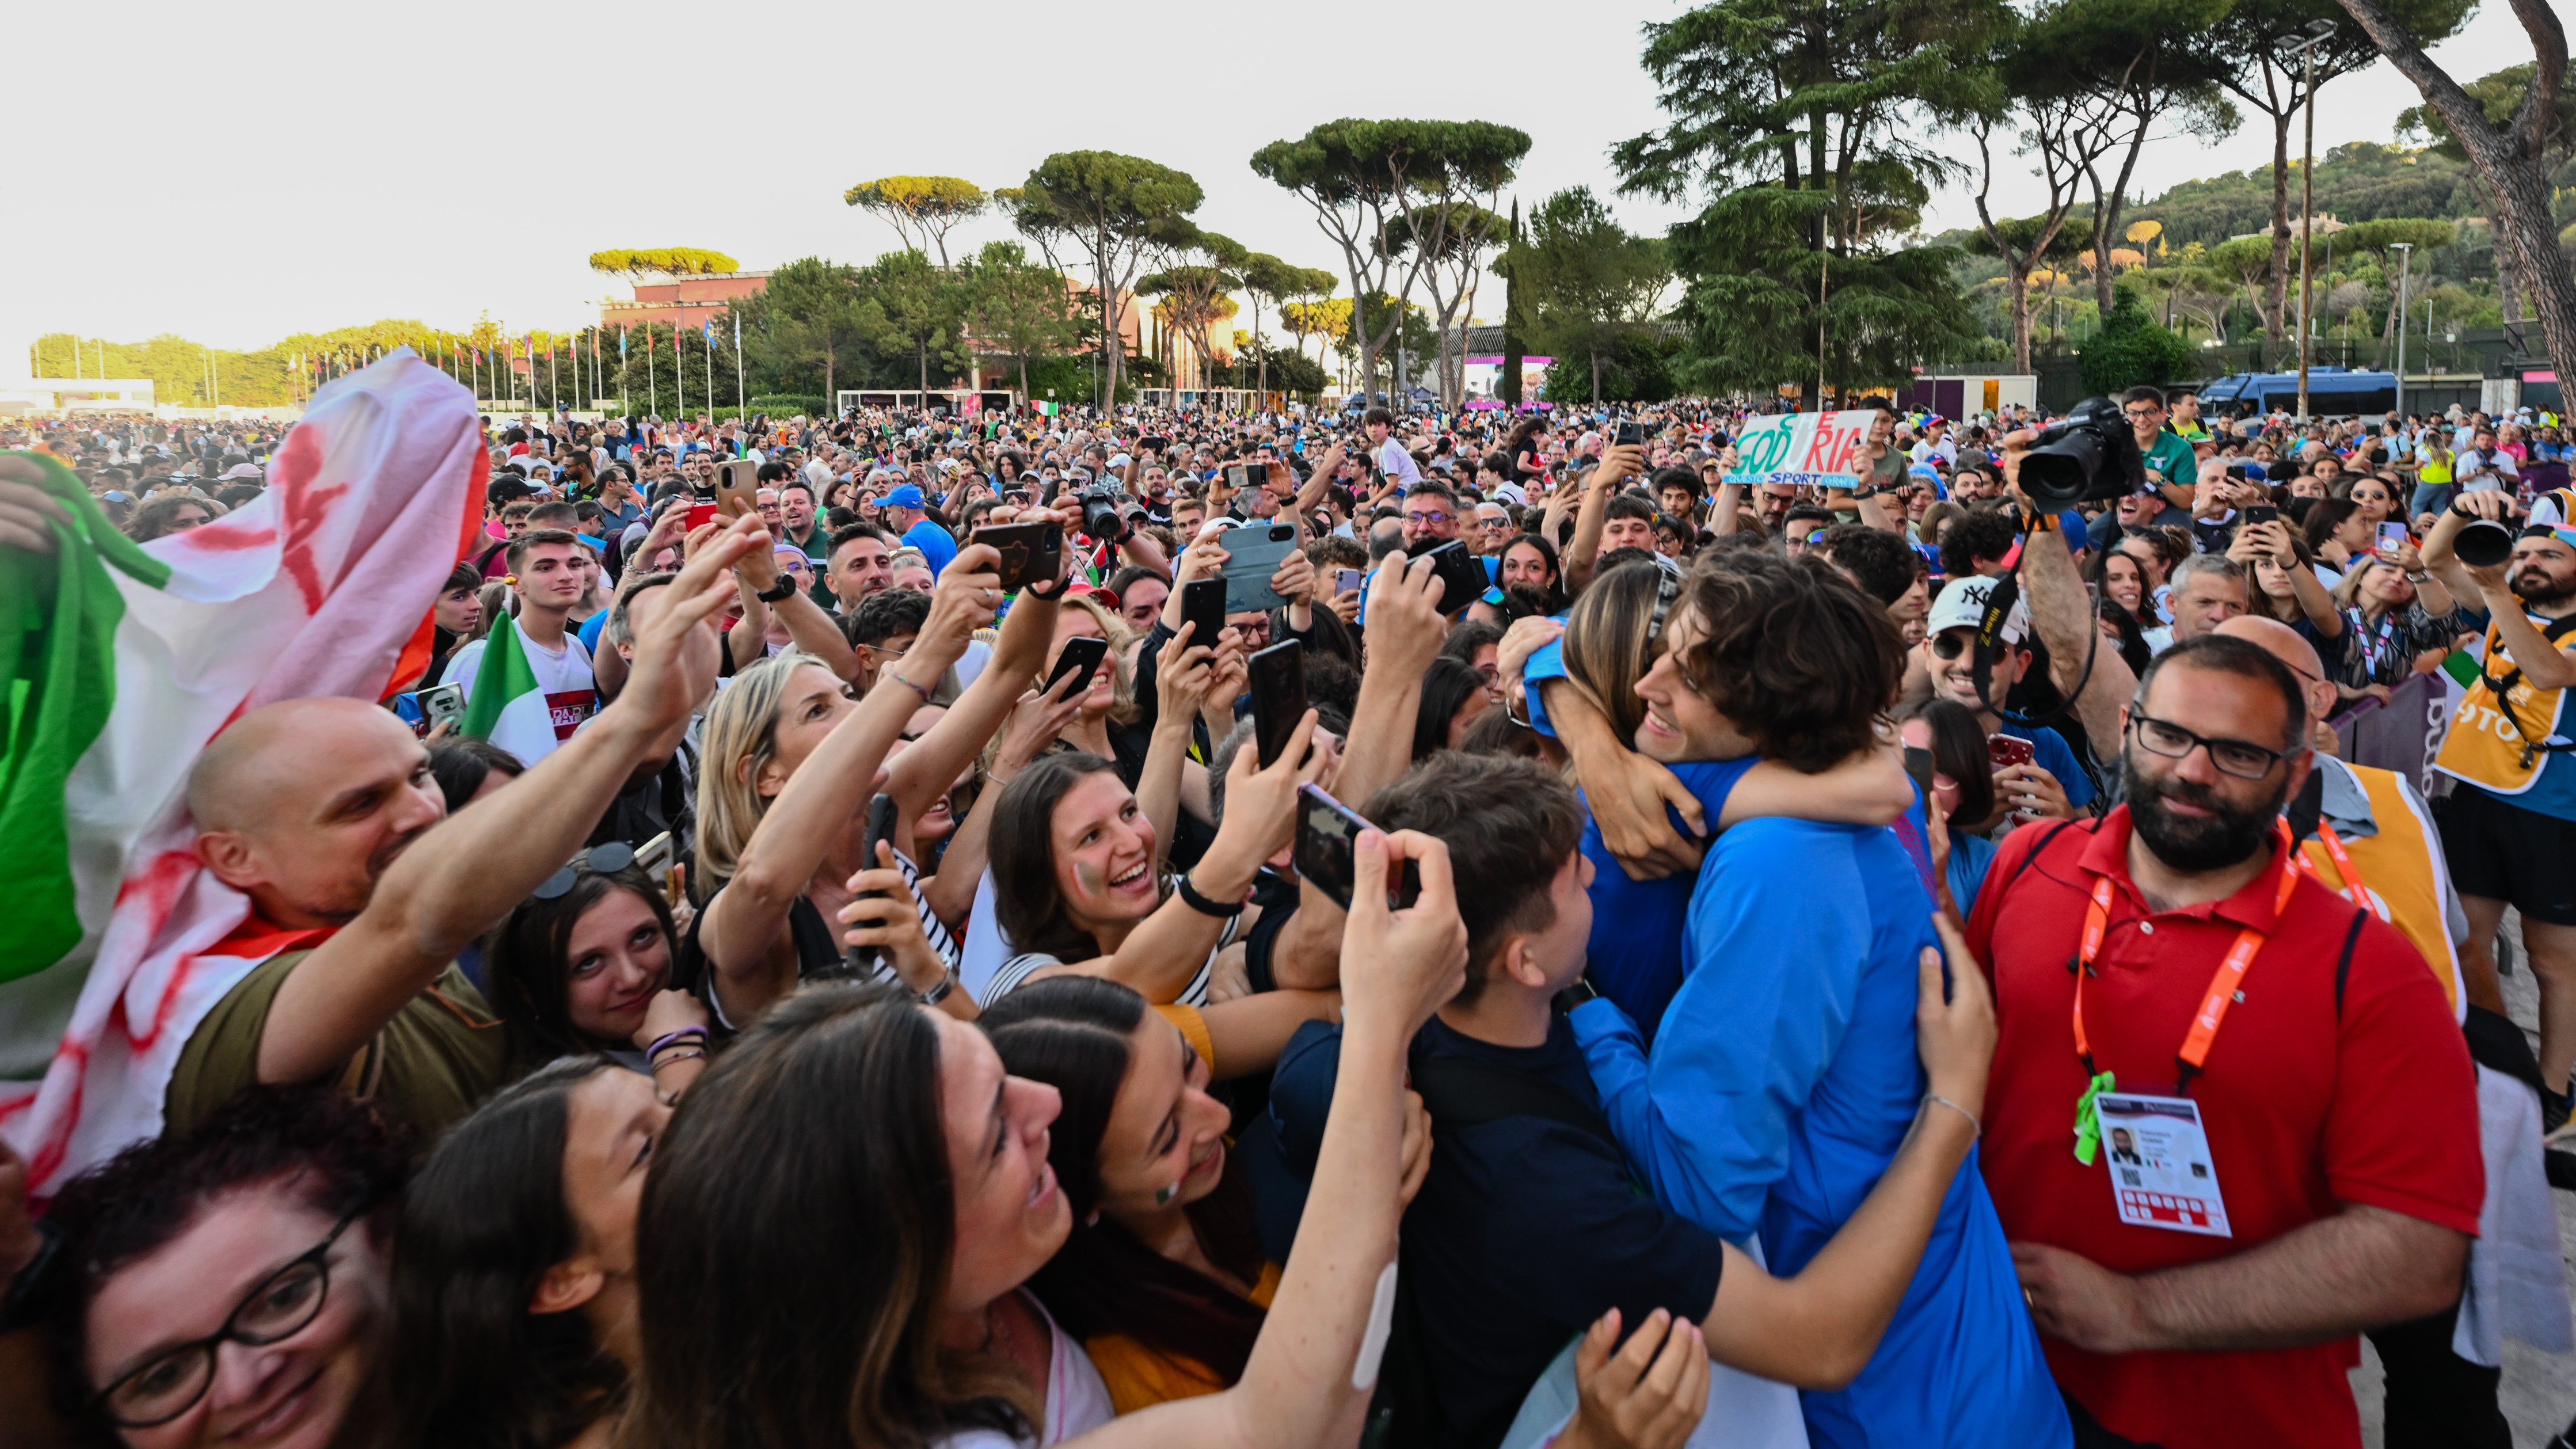 Roma2024, Nepi: “Europei al Foro Italico hanno rivoluzionato rapporto tra pubblico e atletica" 